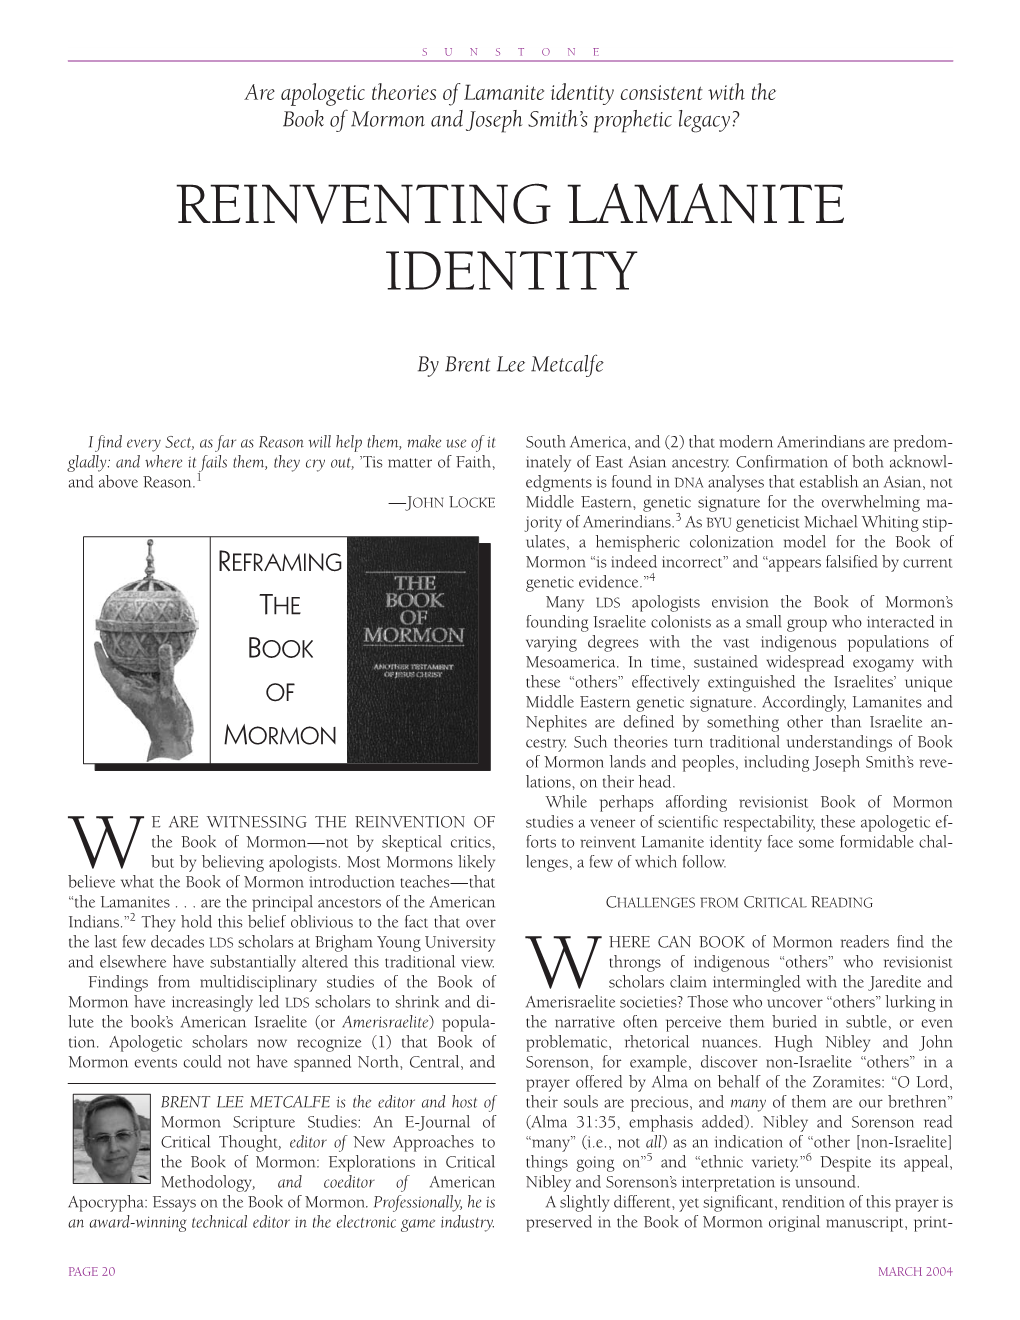 Reinventing Lamanite Identity